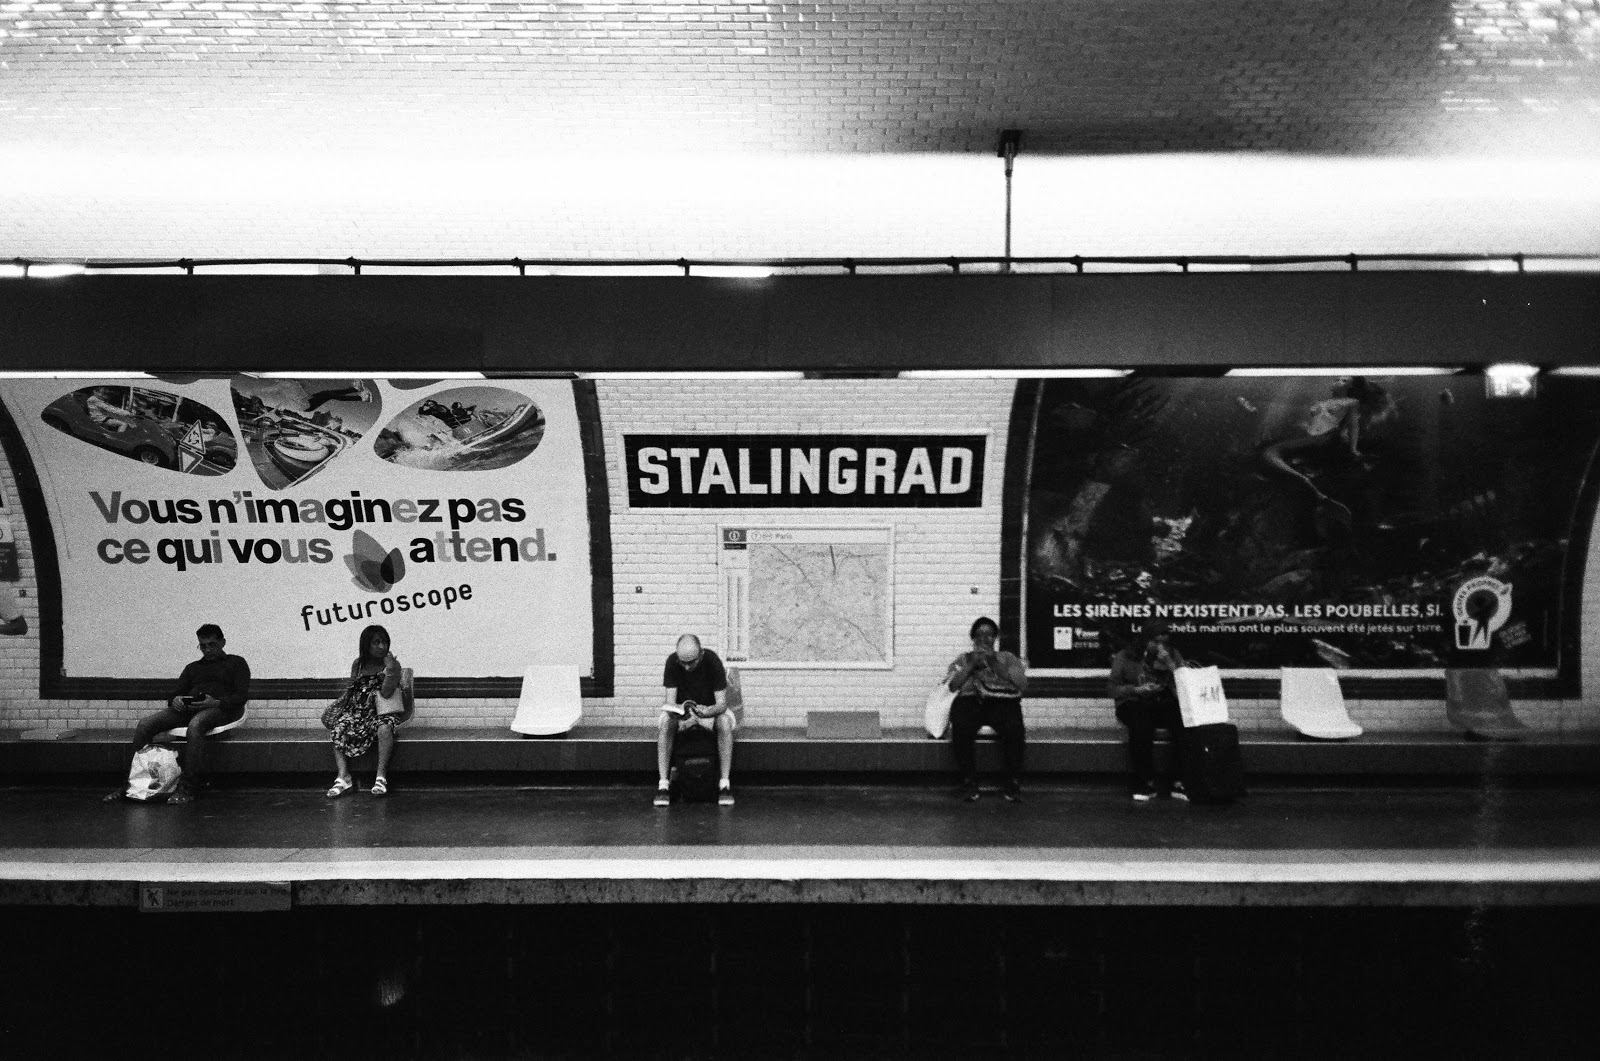 巴黎地鐵 Stalingrad 站 Stalingrad station Paris